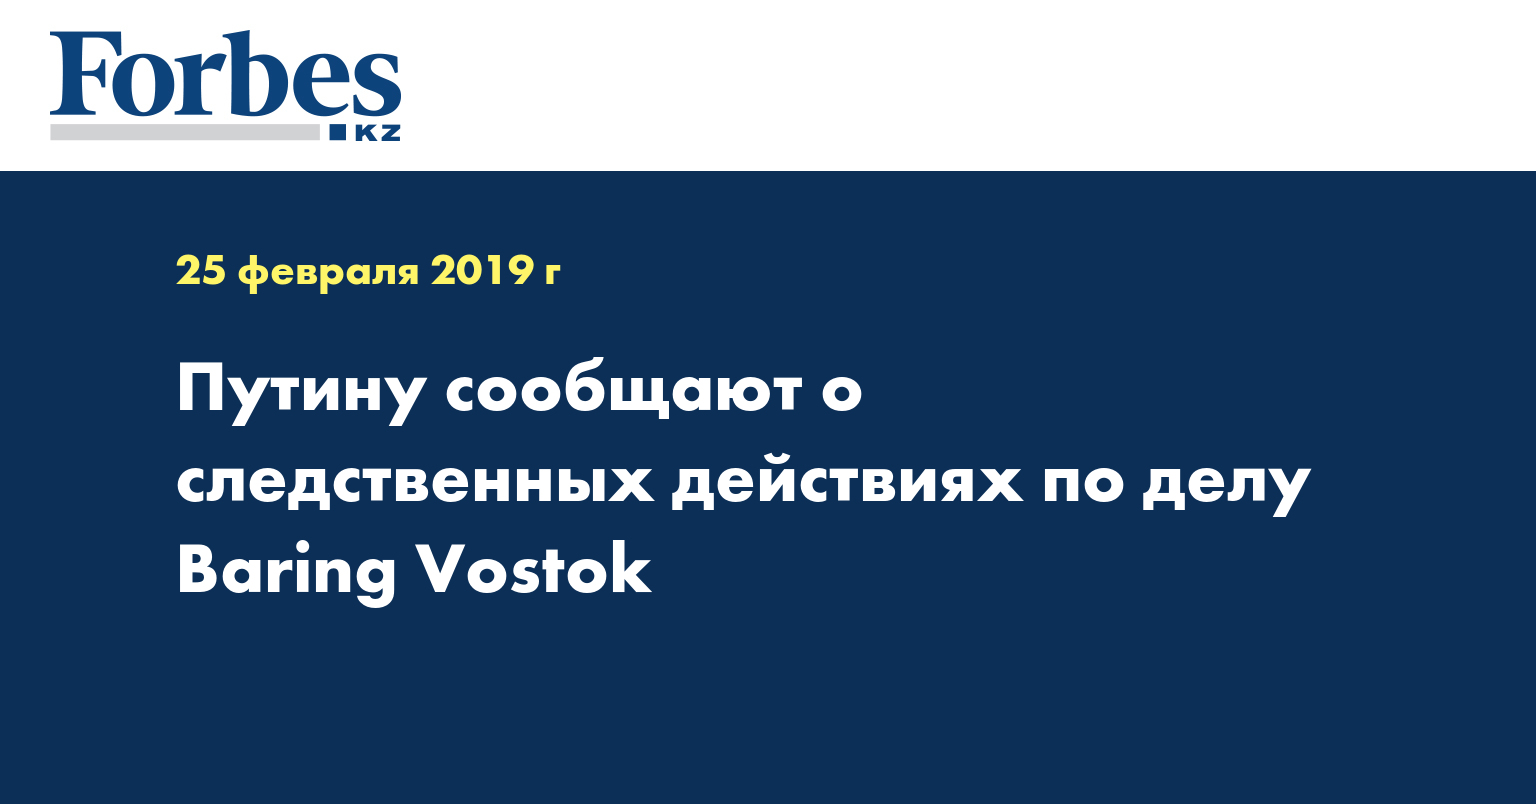 Путину сообщают о следственных действиях по делу Baring Vostok